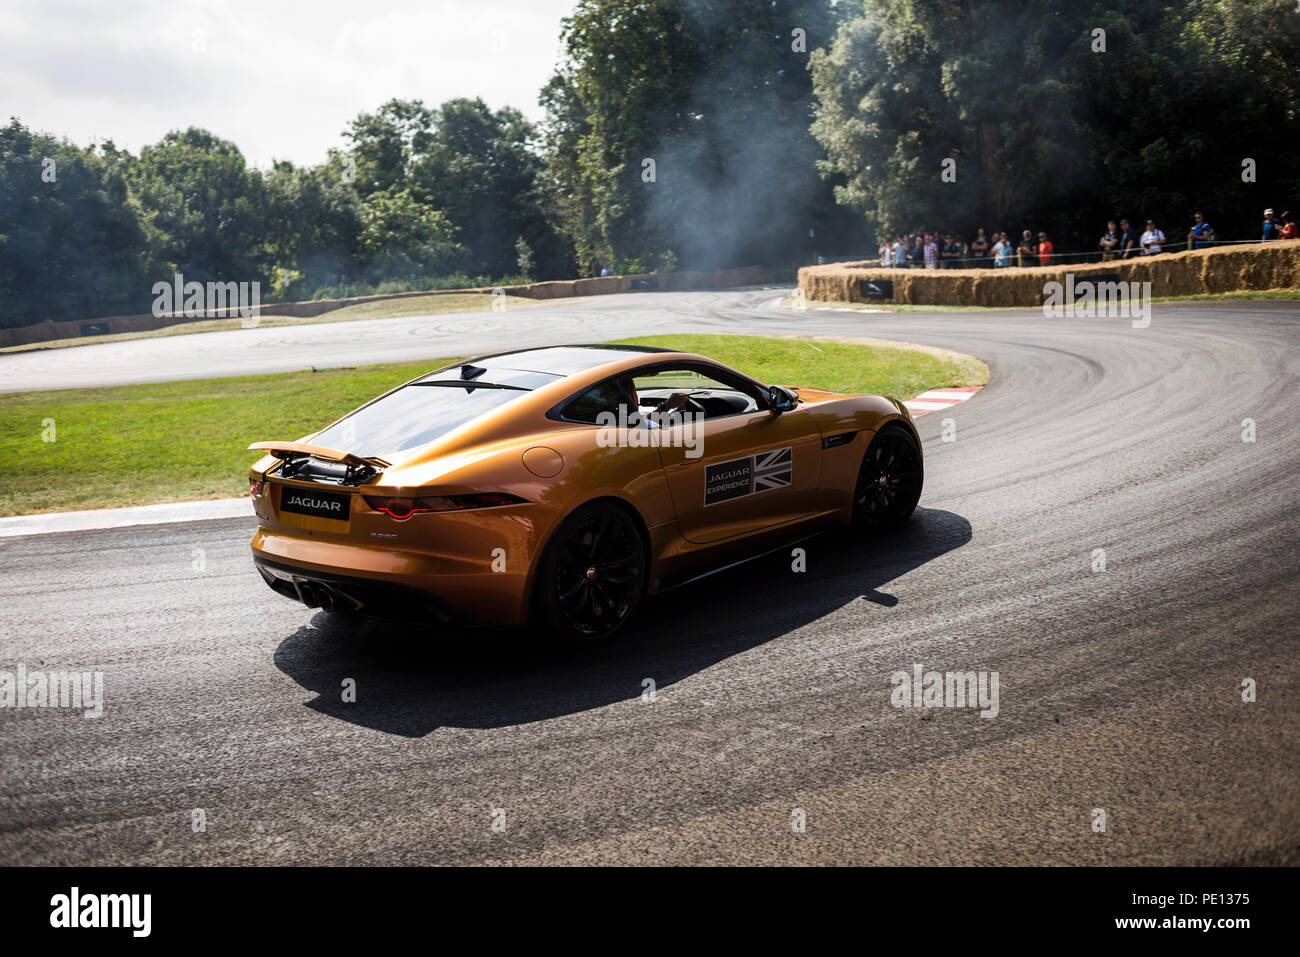 Un Jaguar sportscar tourne ses pneus, créant de la fumée, sur une piste à la Goodwood Festival of Speed 2018. Banque D'Images